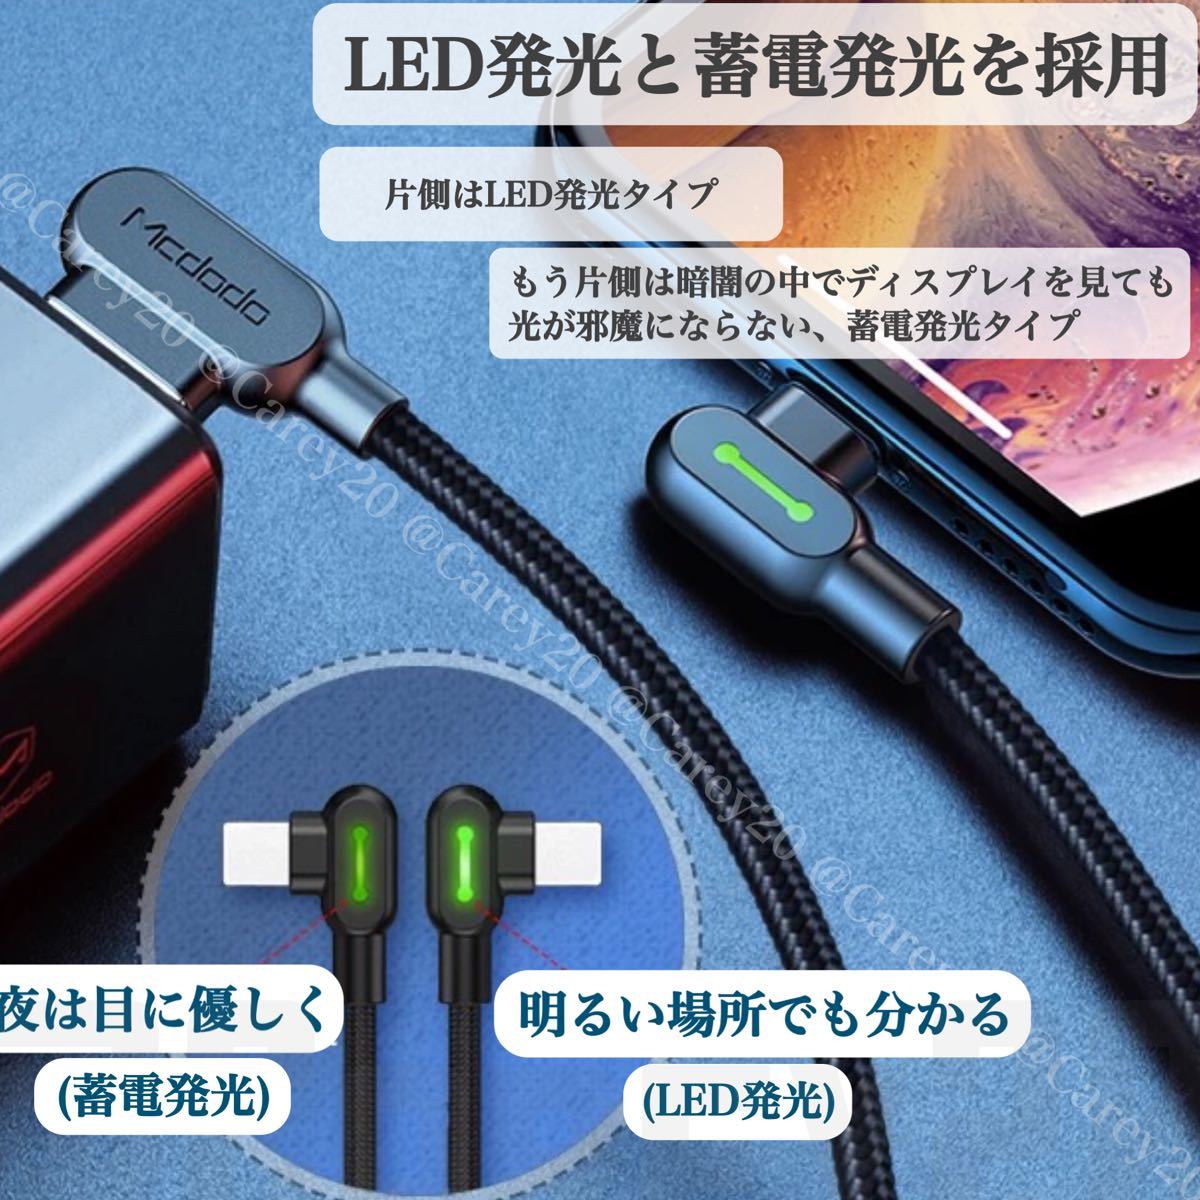 【2本新品】L字型 3m mcdodo社製 充電 ケーブル ライトニングケーブル iPhone急速充電 USB データ転送 充電器